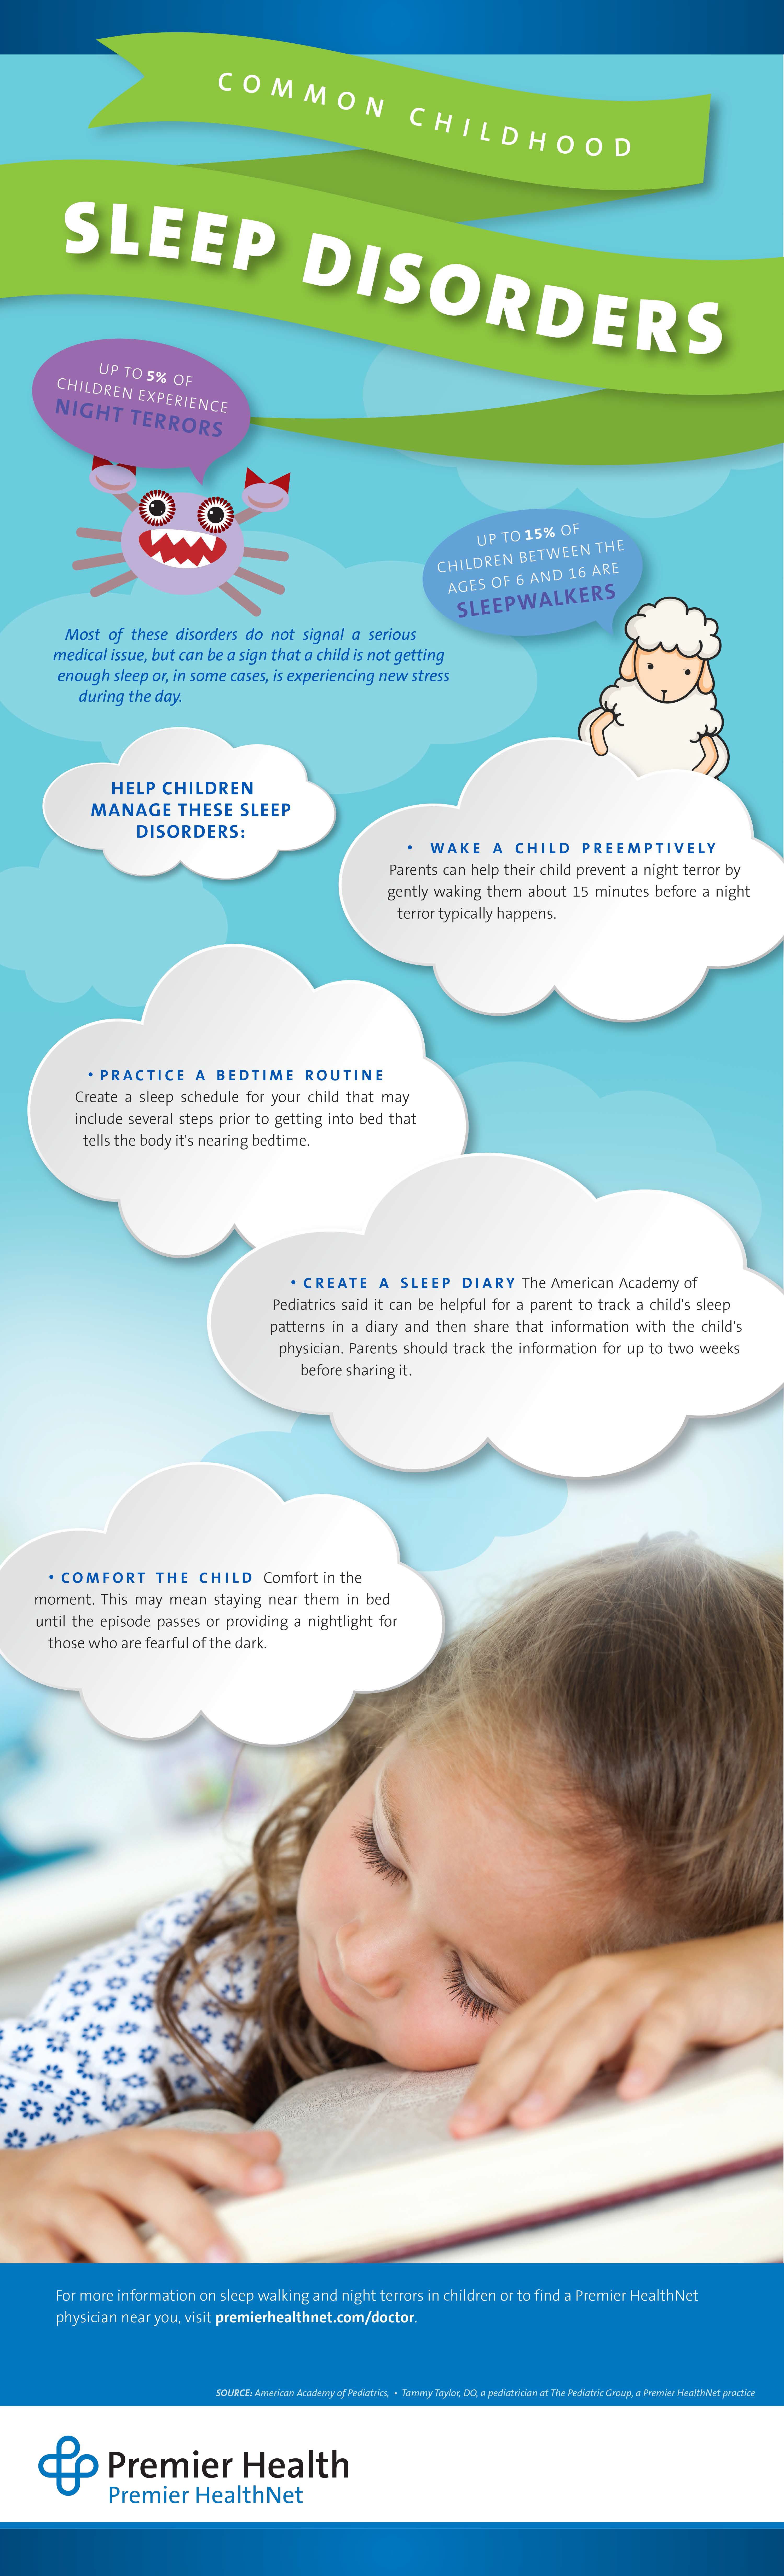 Childhood Sleep Disorders Infographic